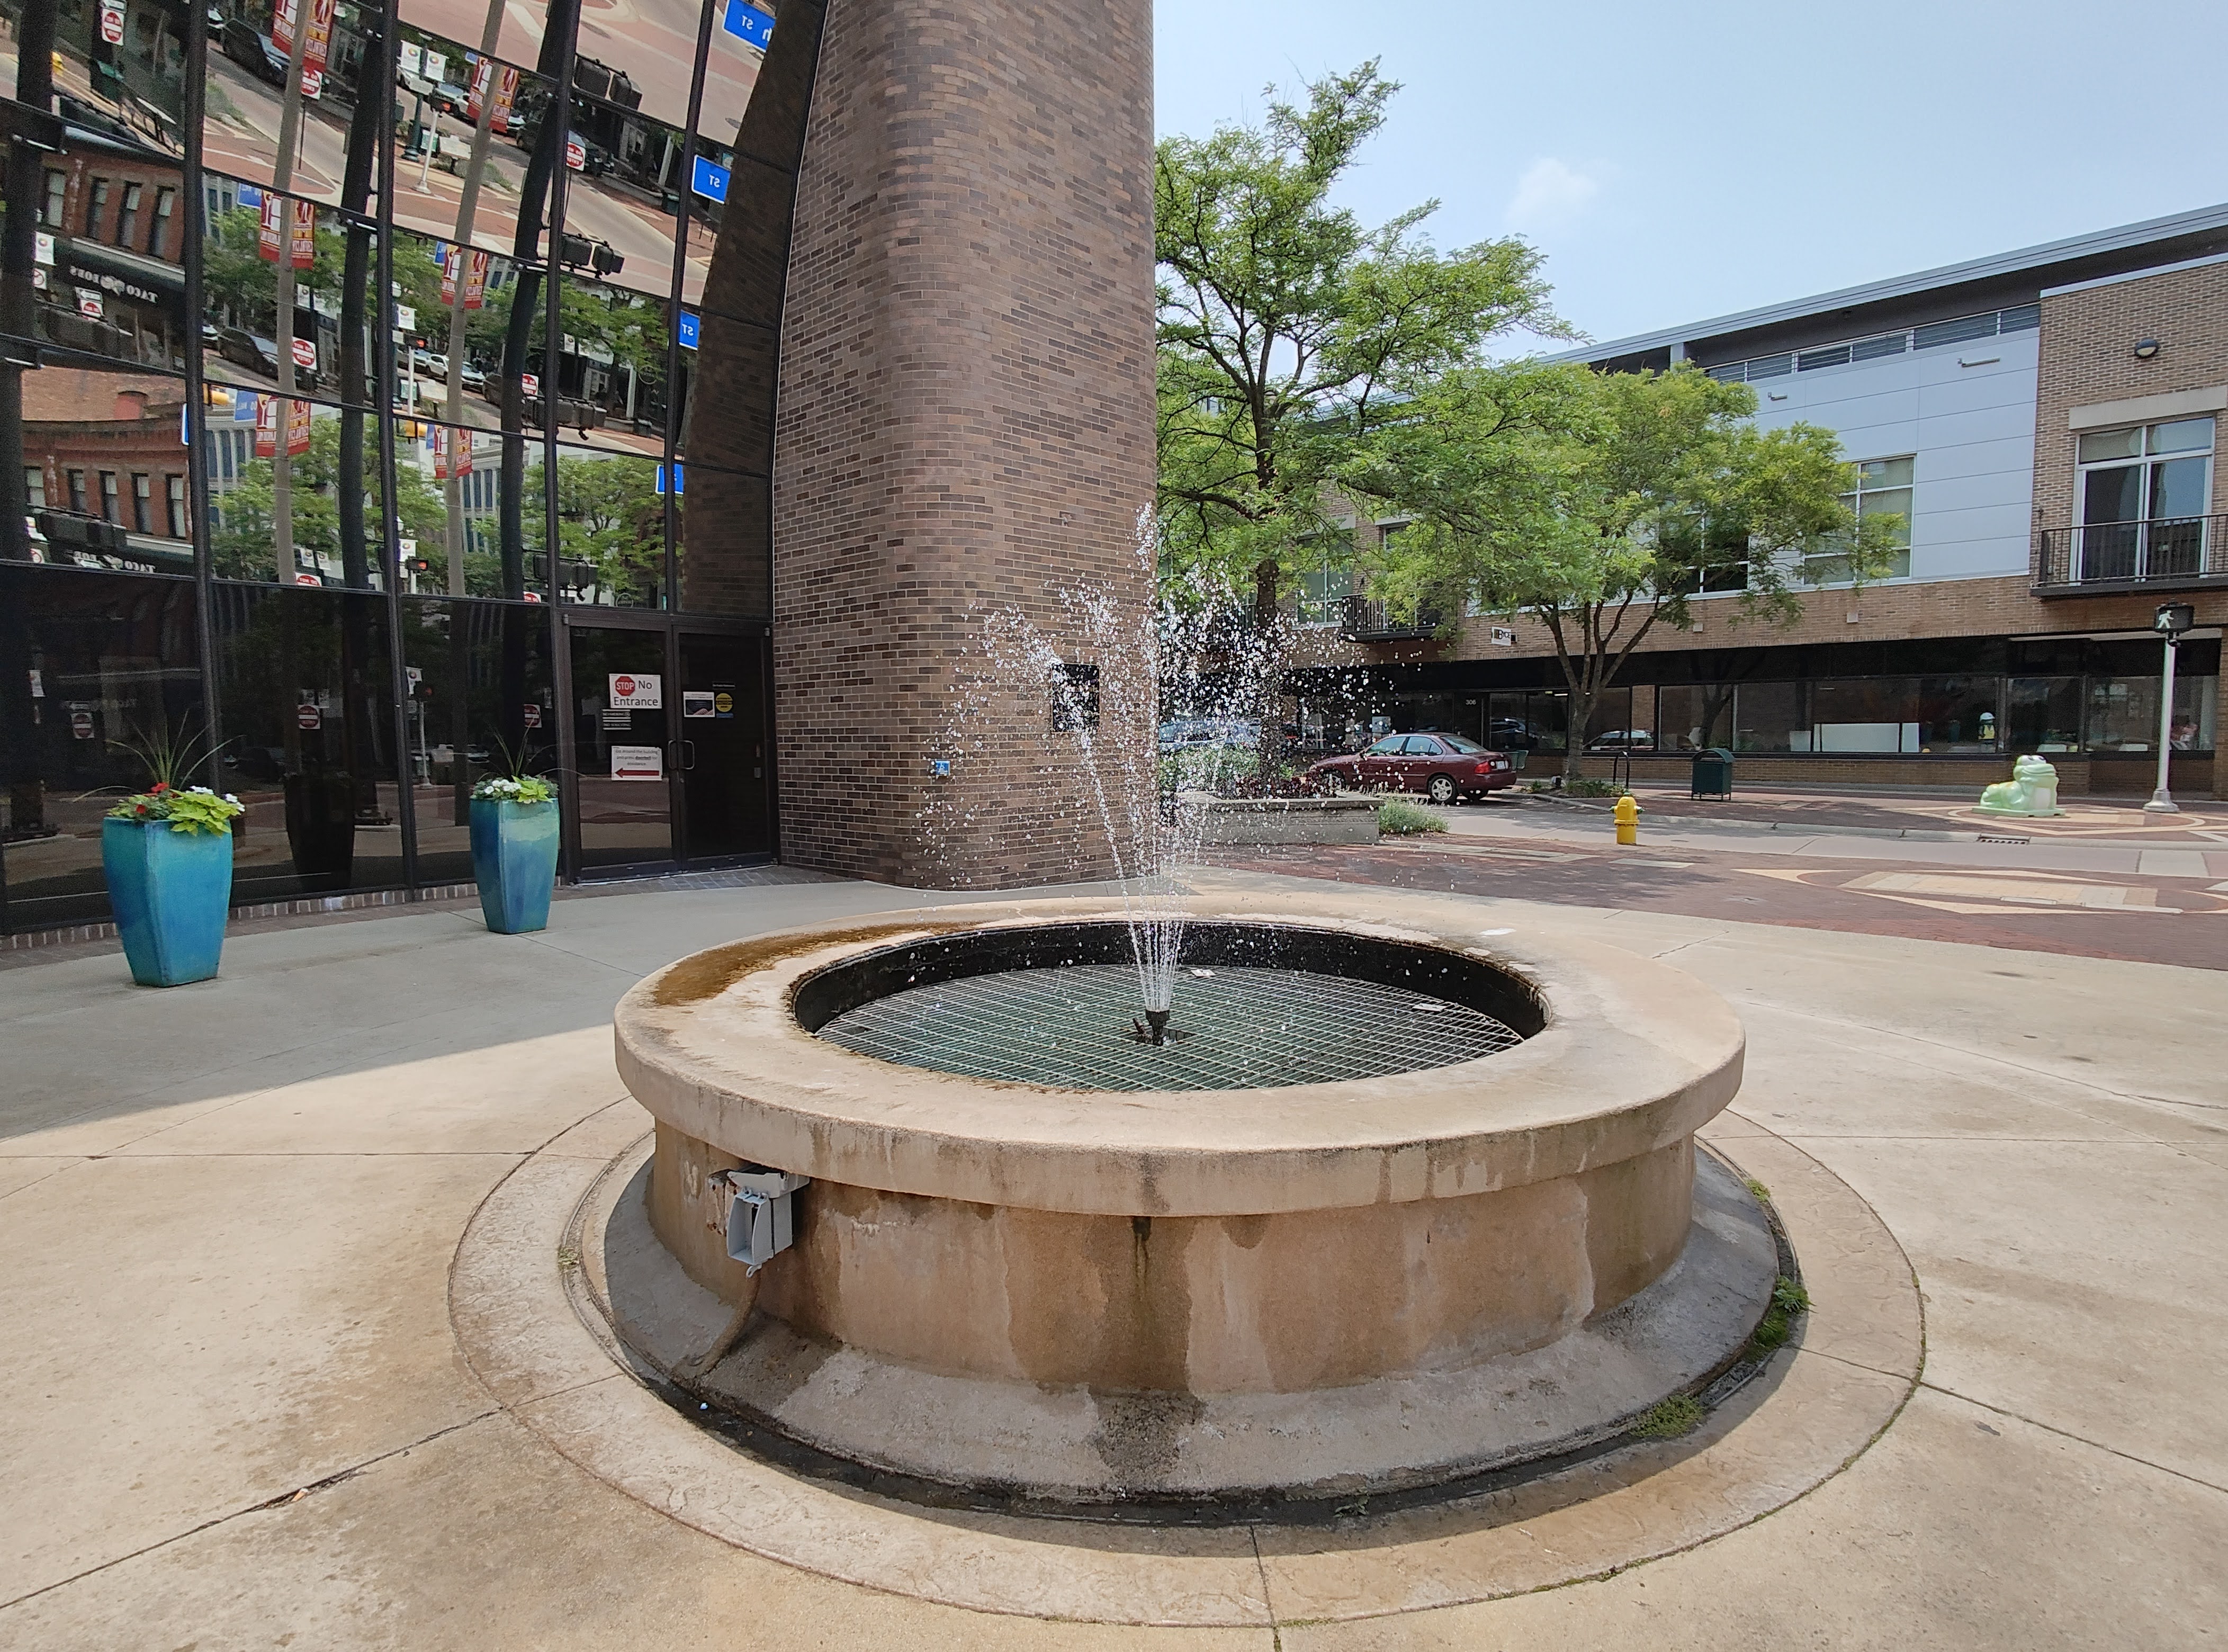 Photo of a fountain in downtown Kalamazoo, taken with the Motorola Razr Plus.